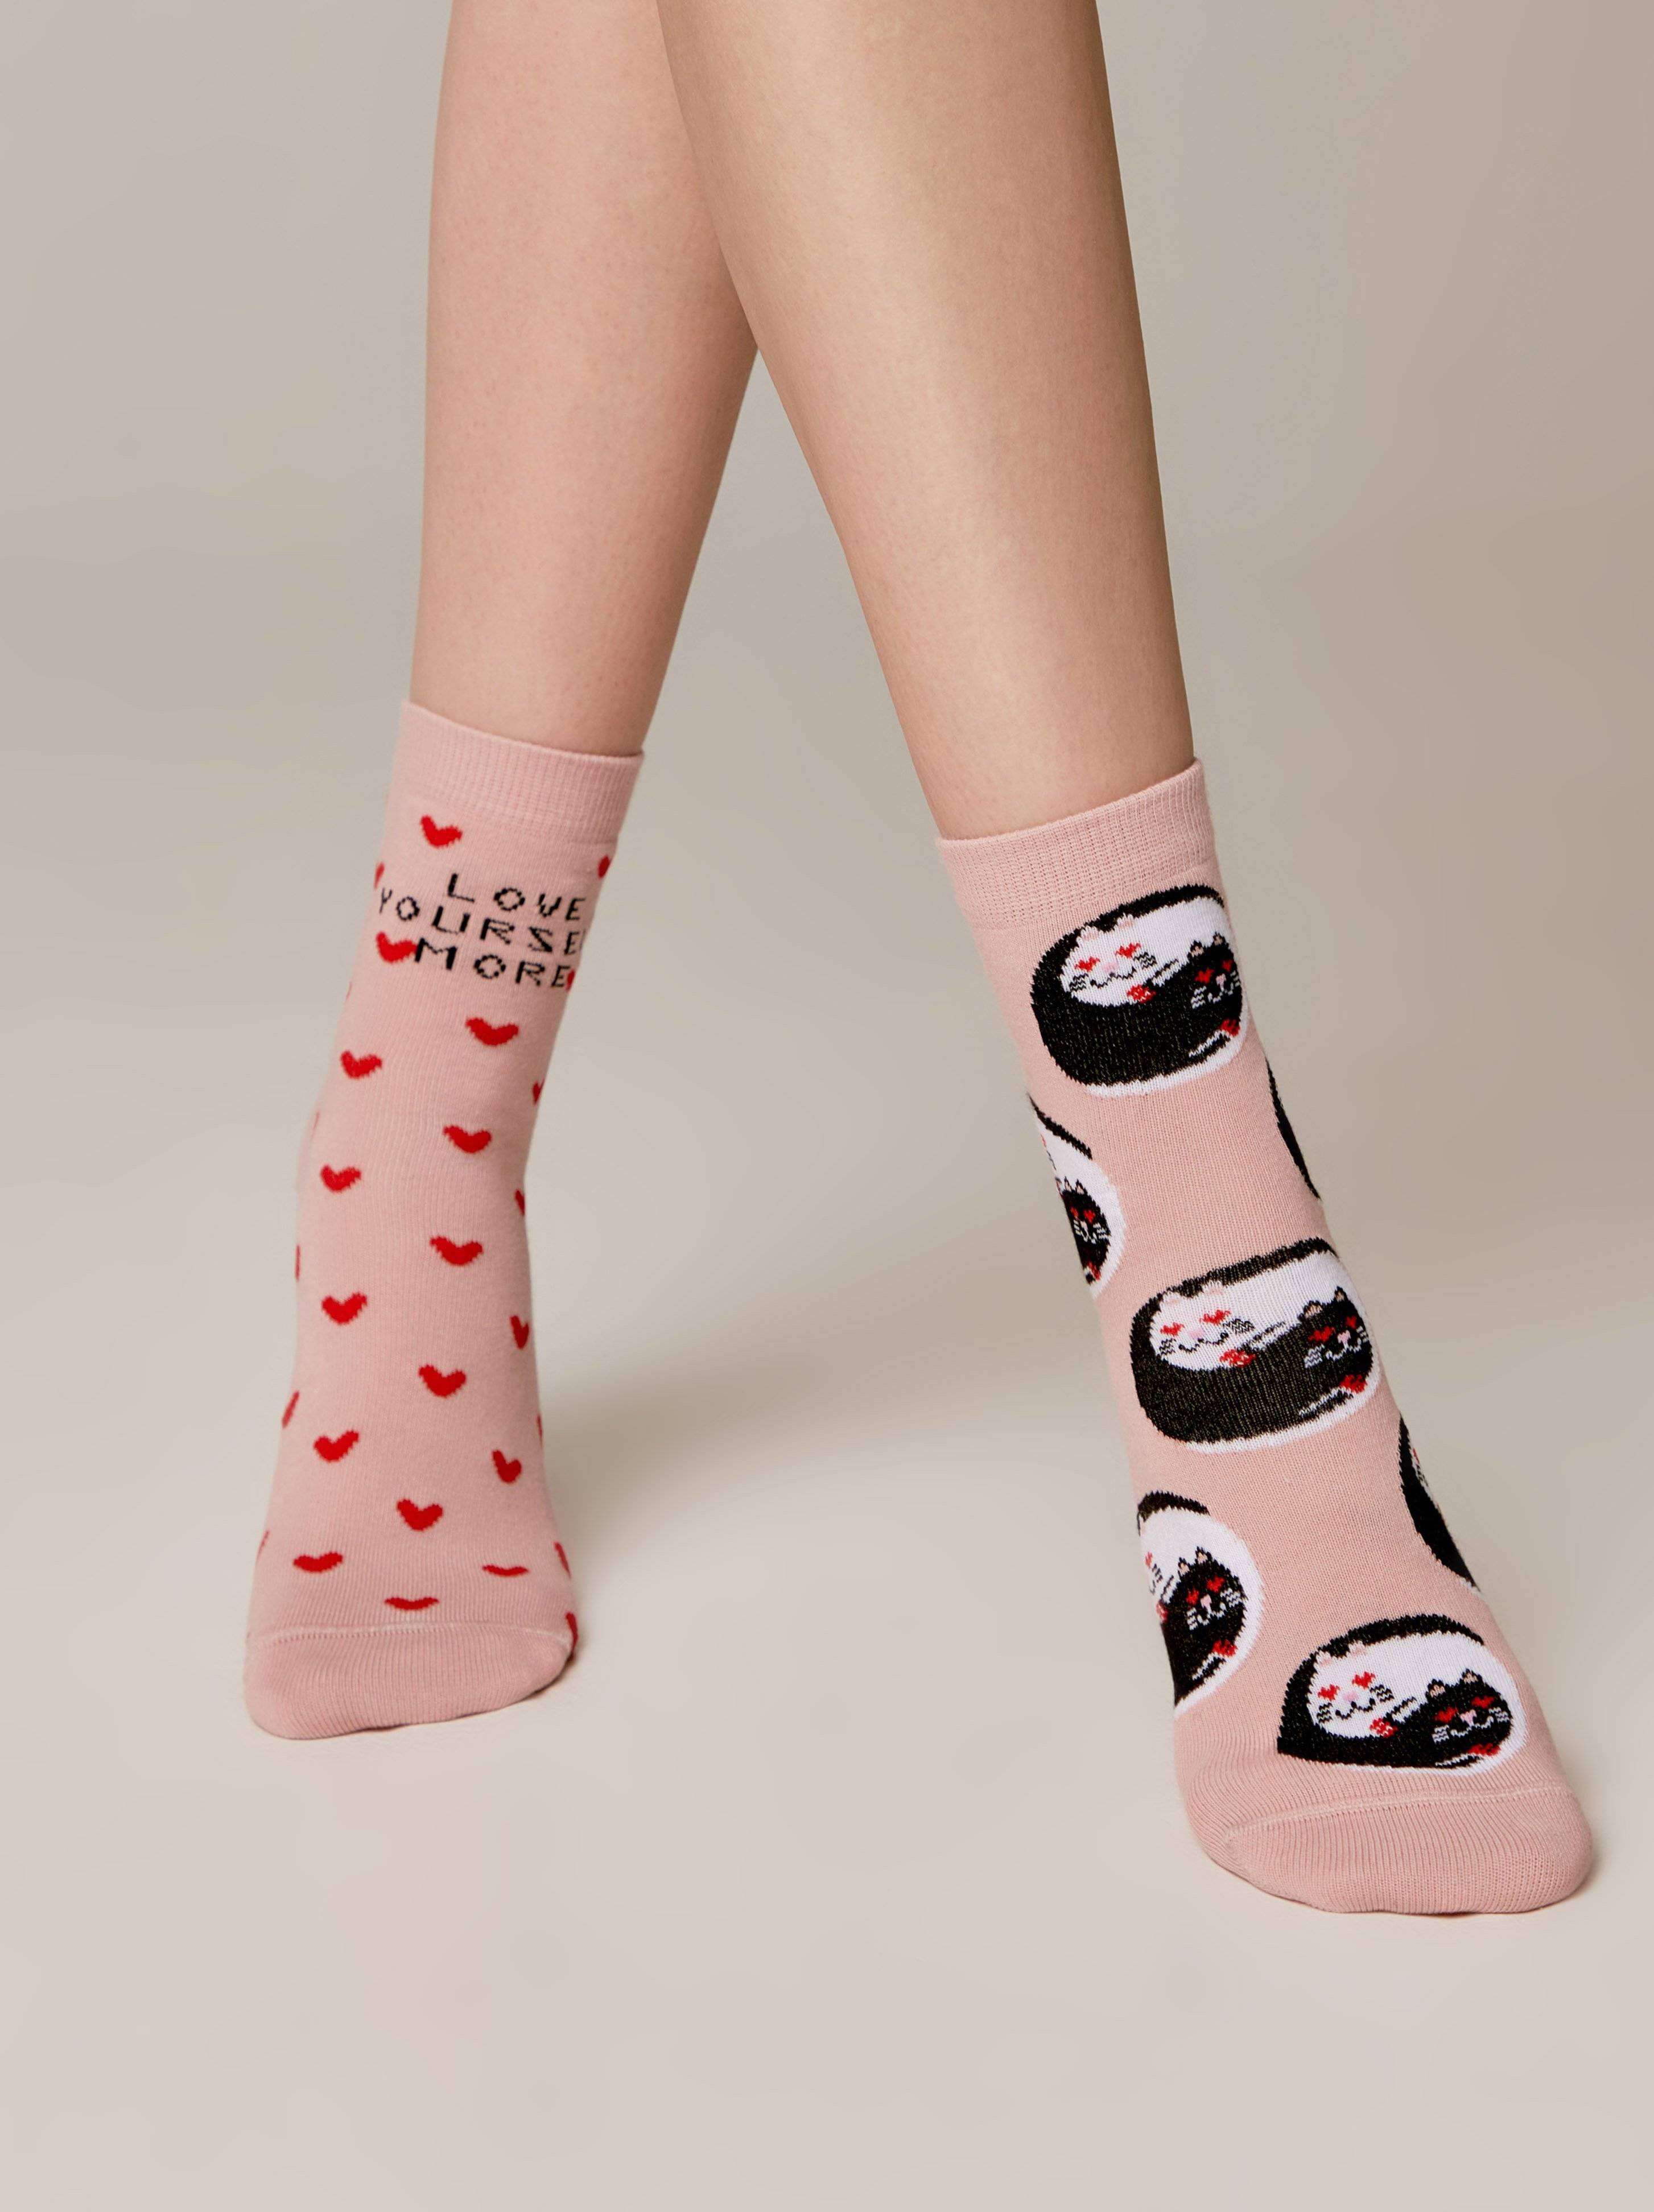 Conte Woman's Socks 387